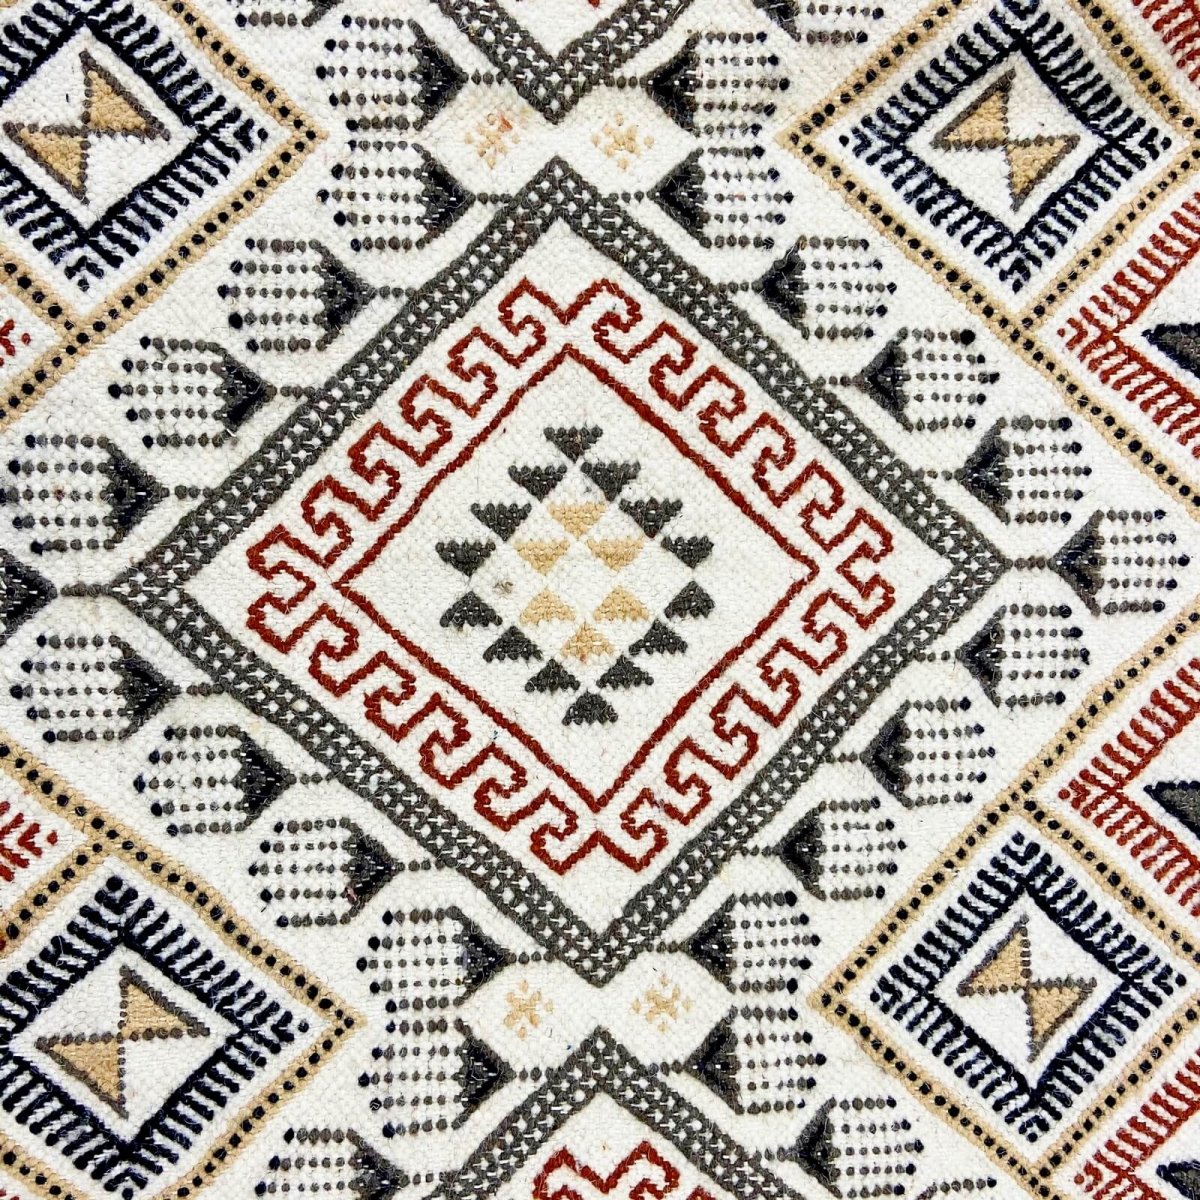 Berber tapijt Vloerkleed Margoum Krish 170x240 cm Wit/Beige (Handgeweven, Wol, Tunesië) Tunesisch Margoum Vloerkleed uit de stad